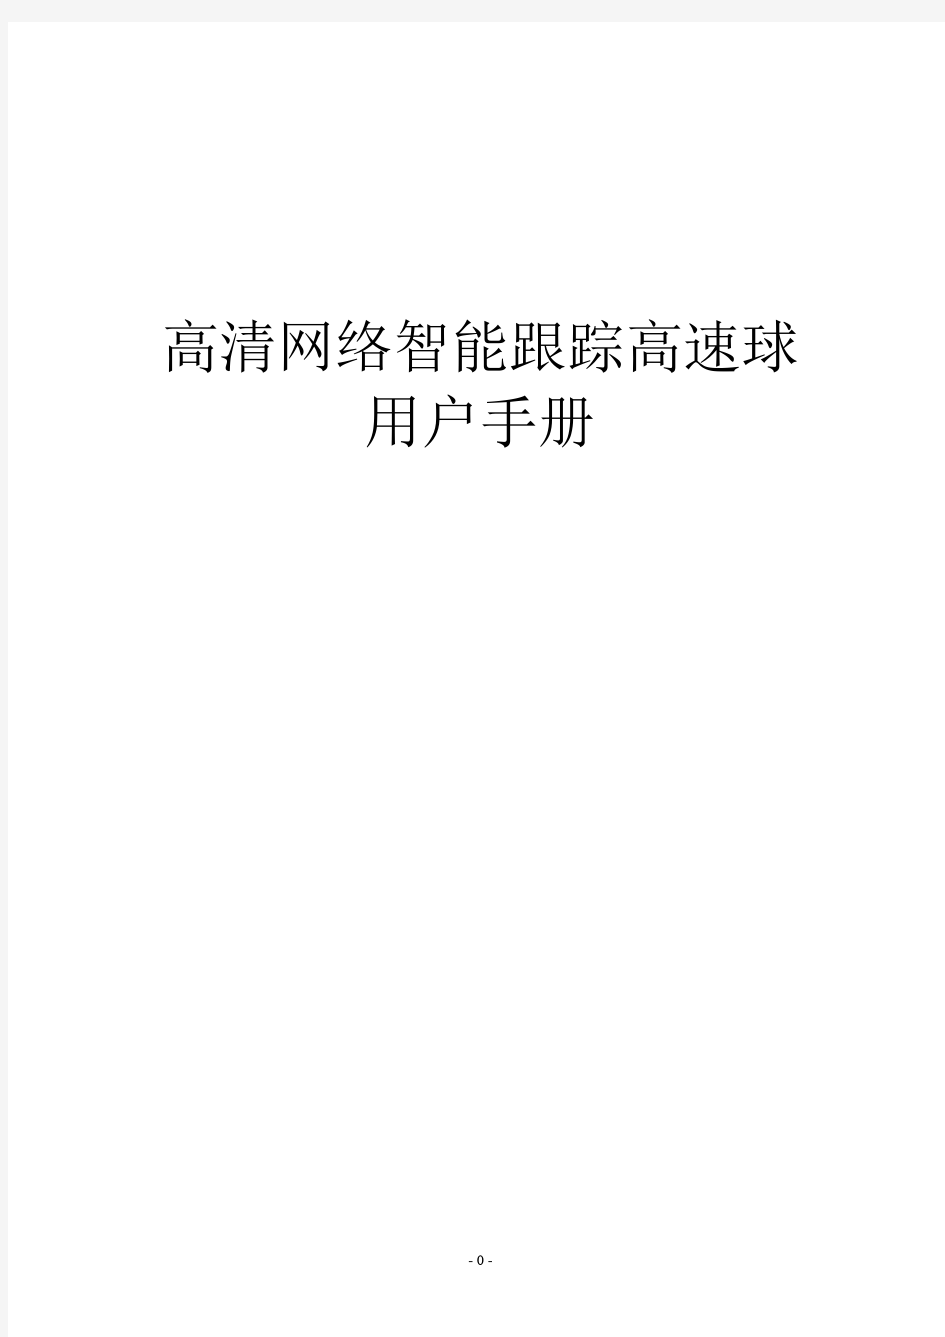 S3系列高清网络高速球产品用户手册_TD_CN天地伟业球机使用手册